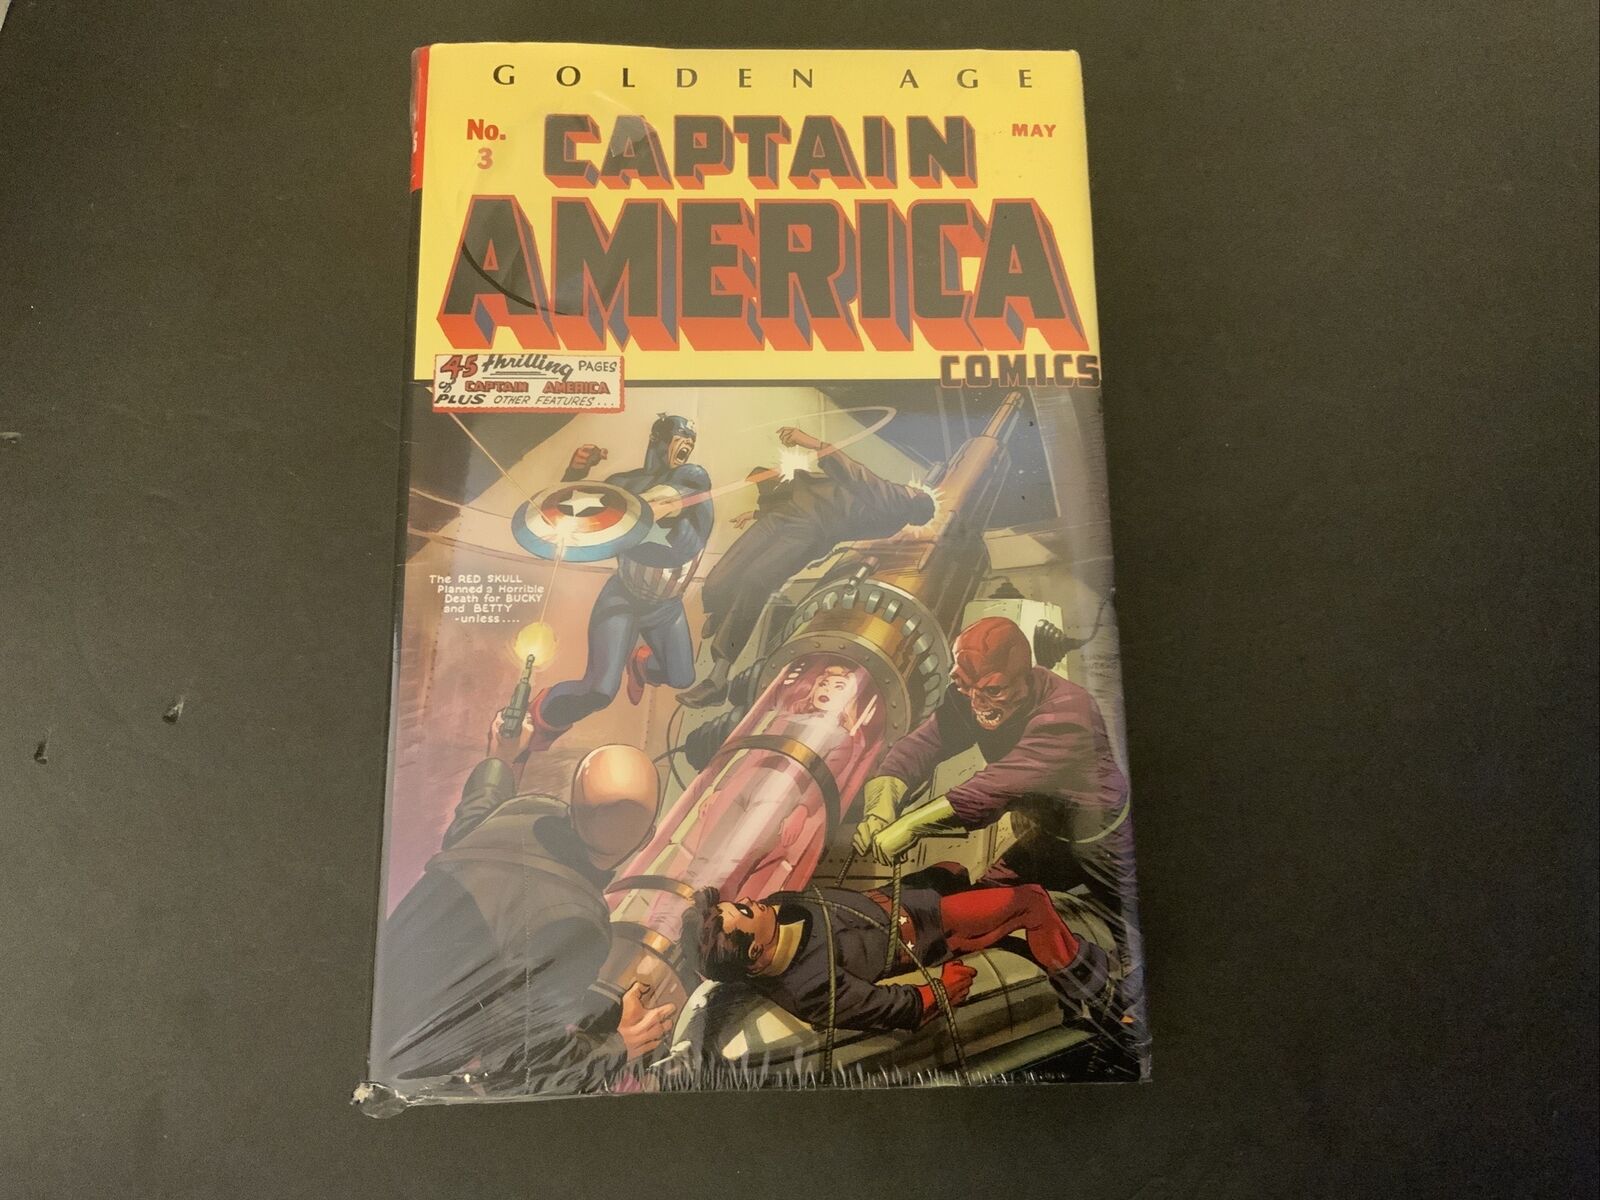 Golden Age Captain America Omnibus #1 (Marvel, 2014)